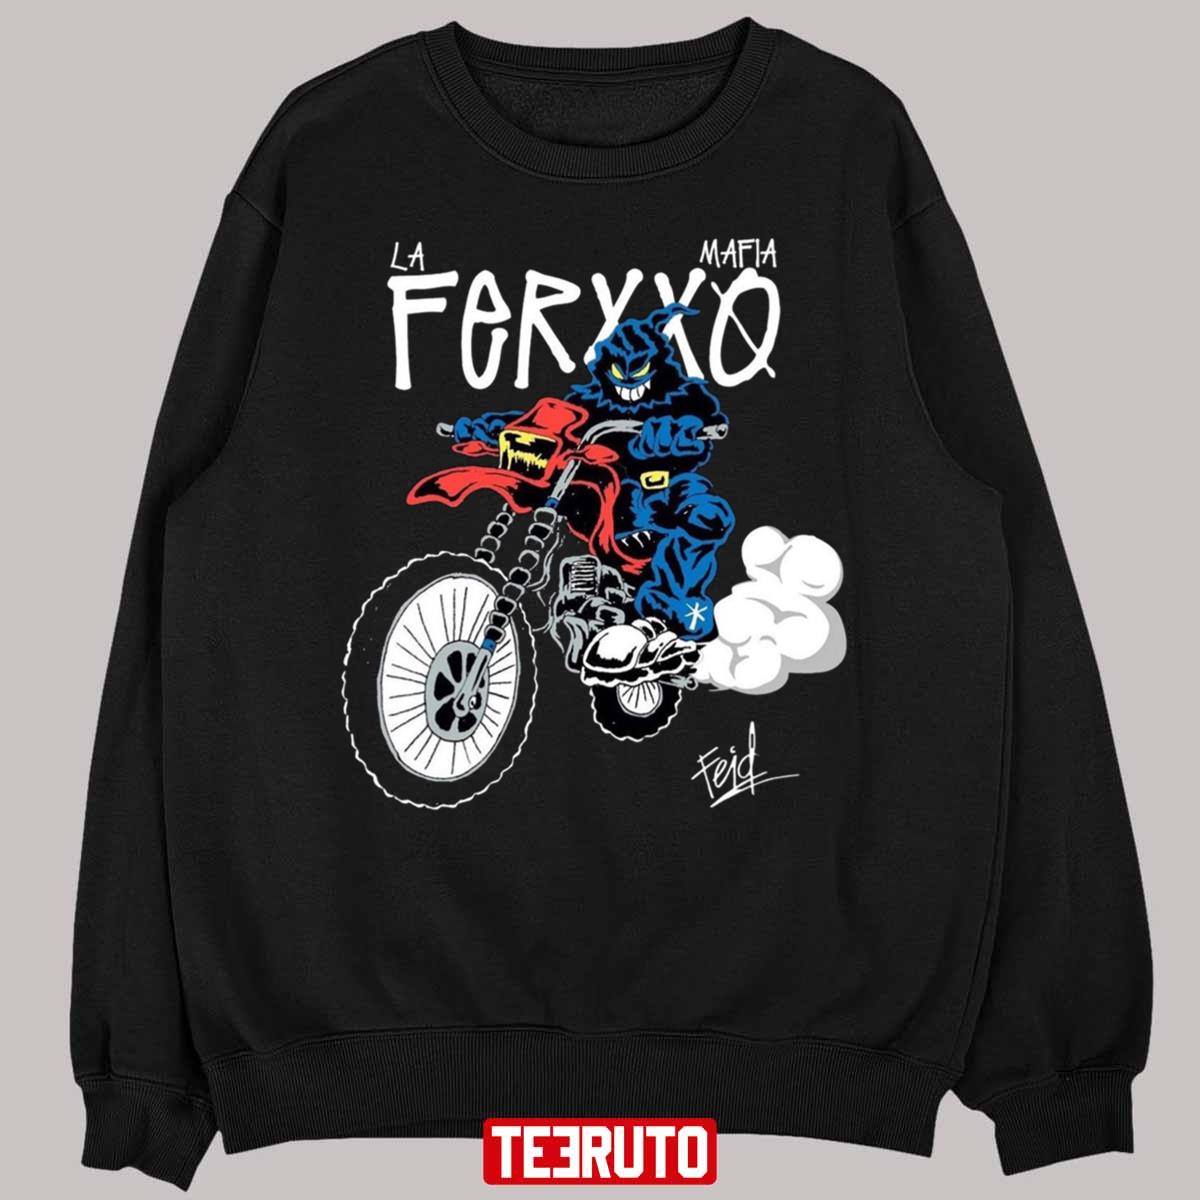 La Mafia Del Ferxxo Design Unisex T-Shirt